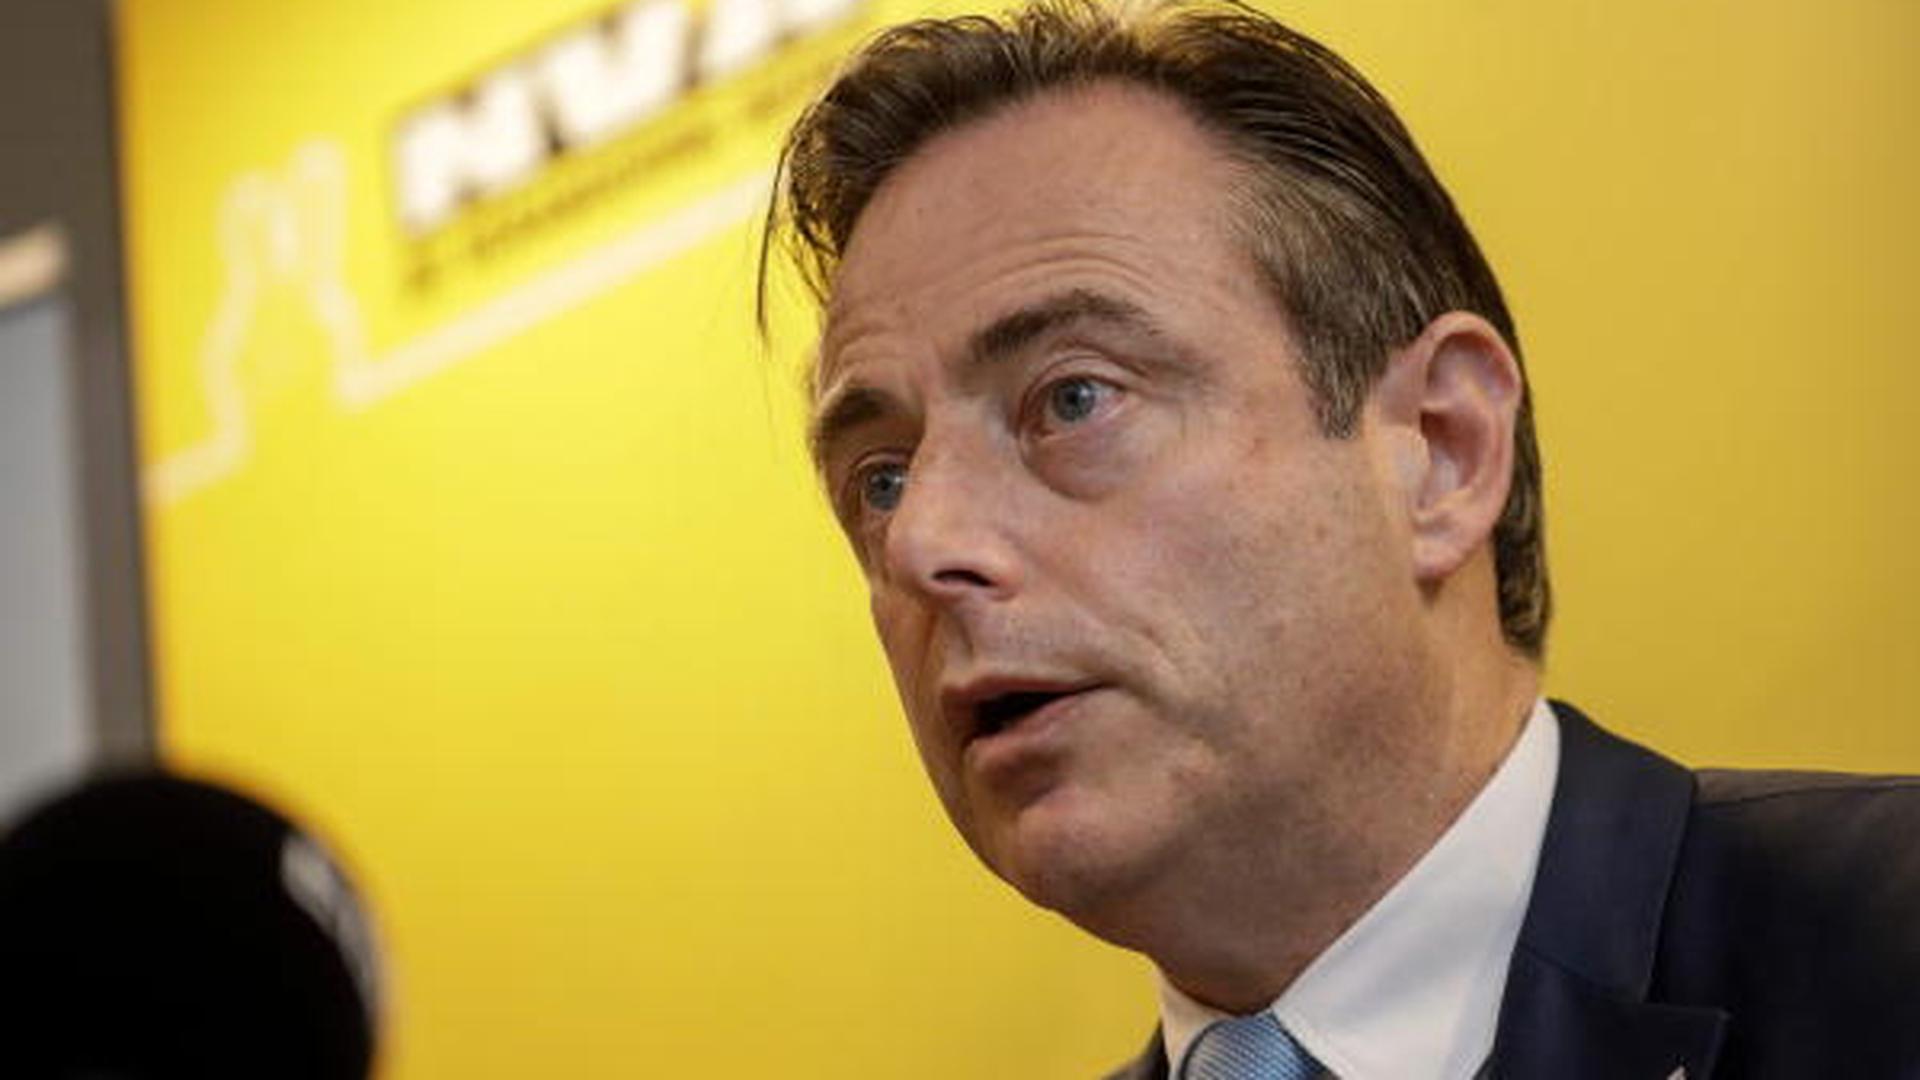 Bart De Wever et son parti, la N-VA tardent à former une coalition avec les chrétiens-démocrates et les libéraux